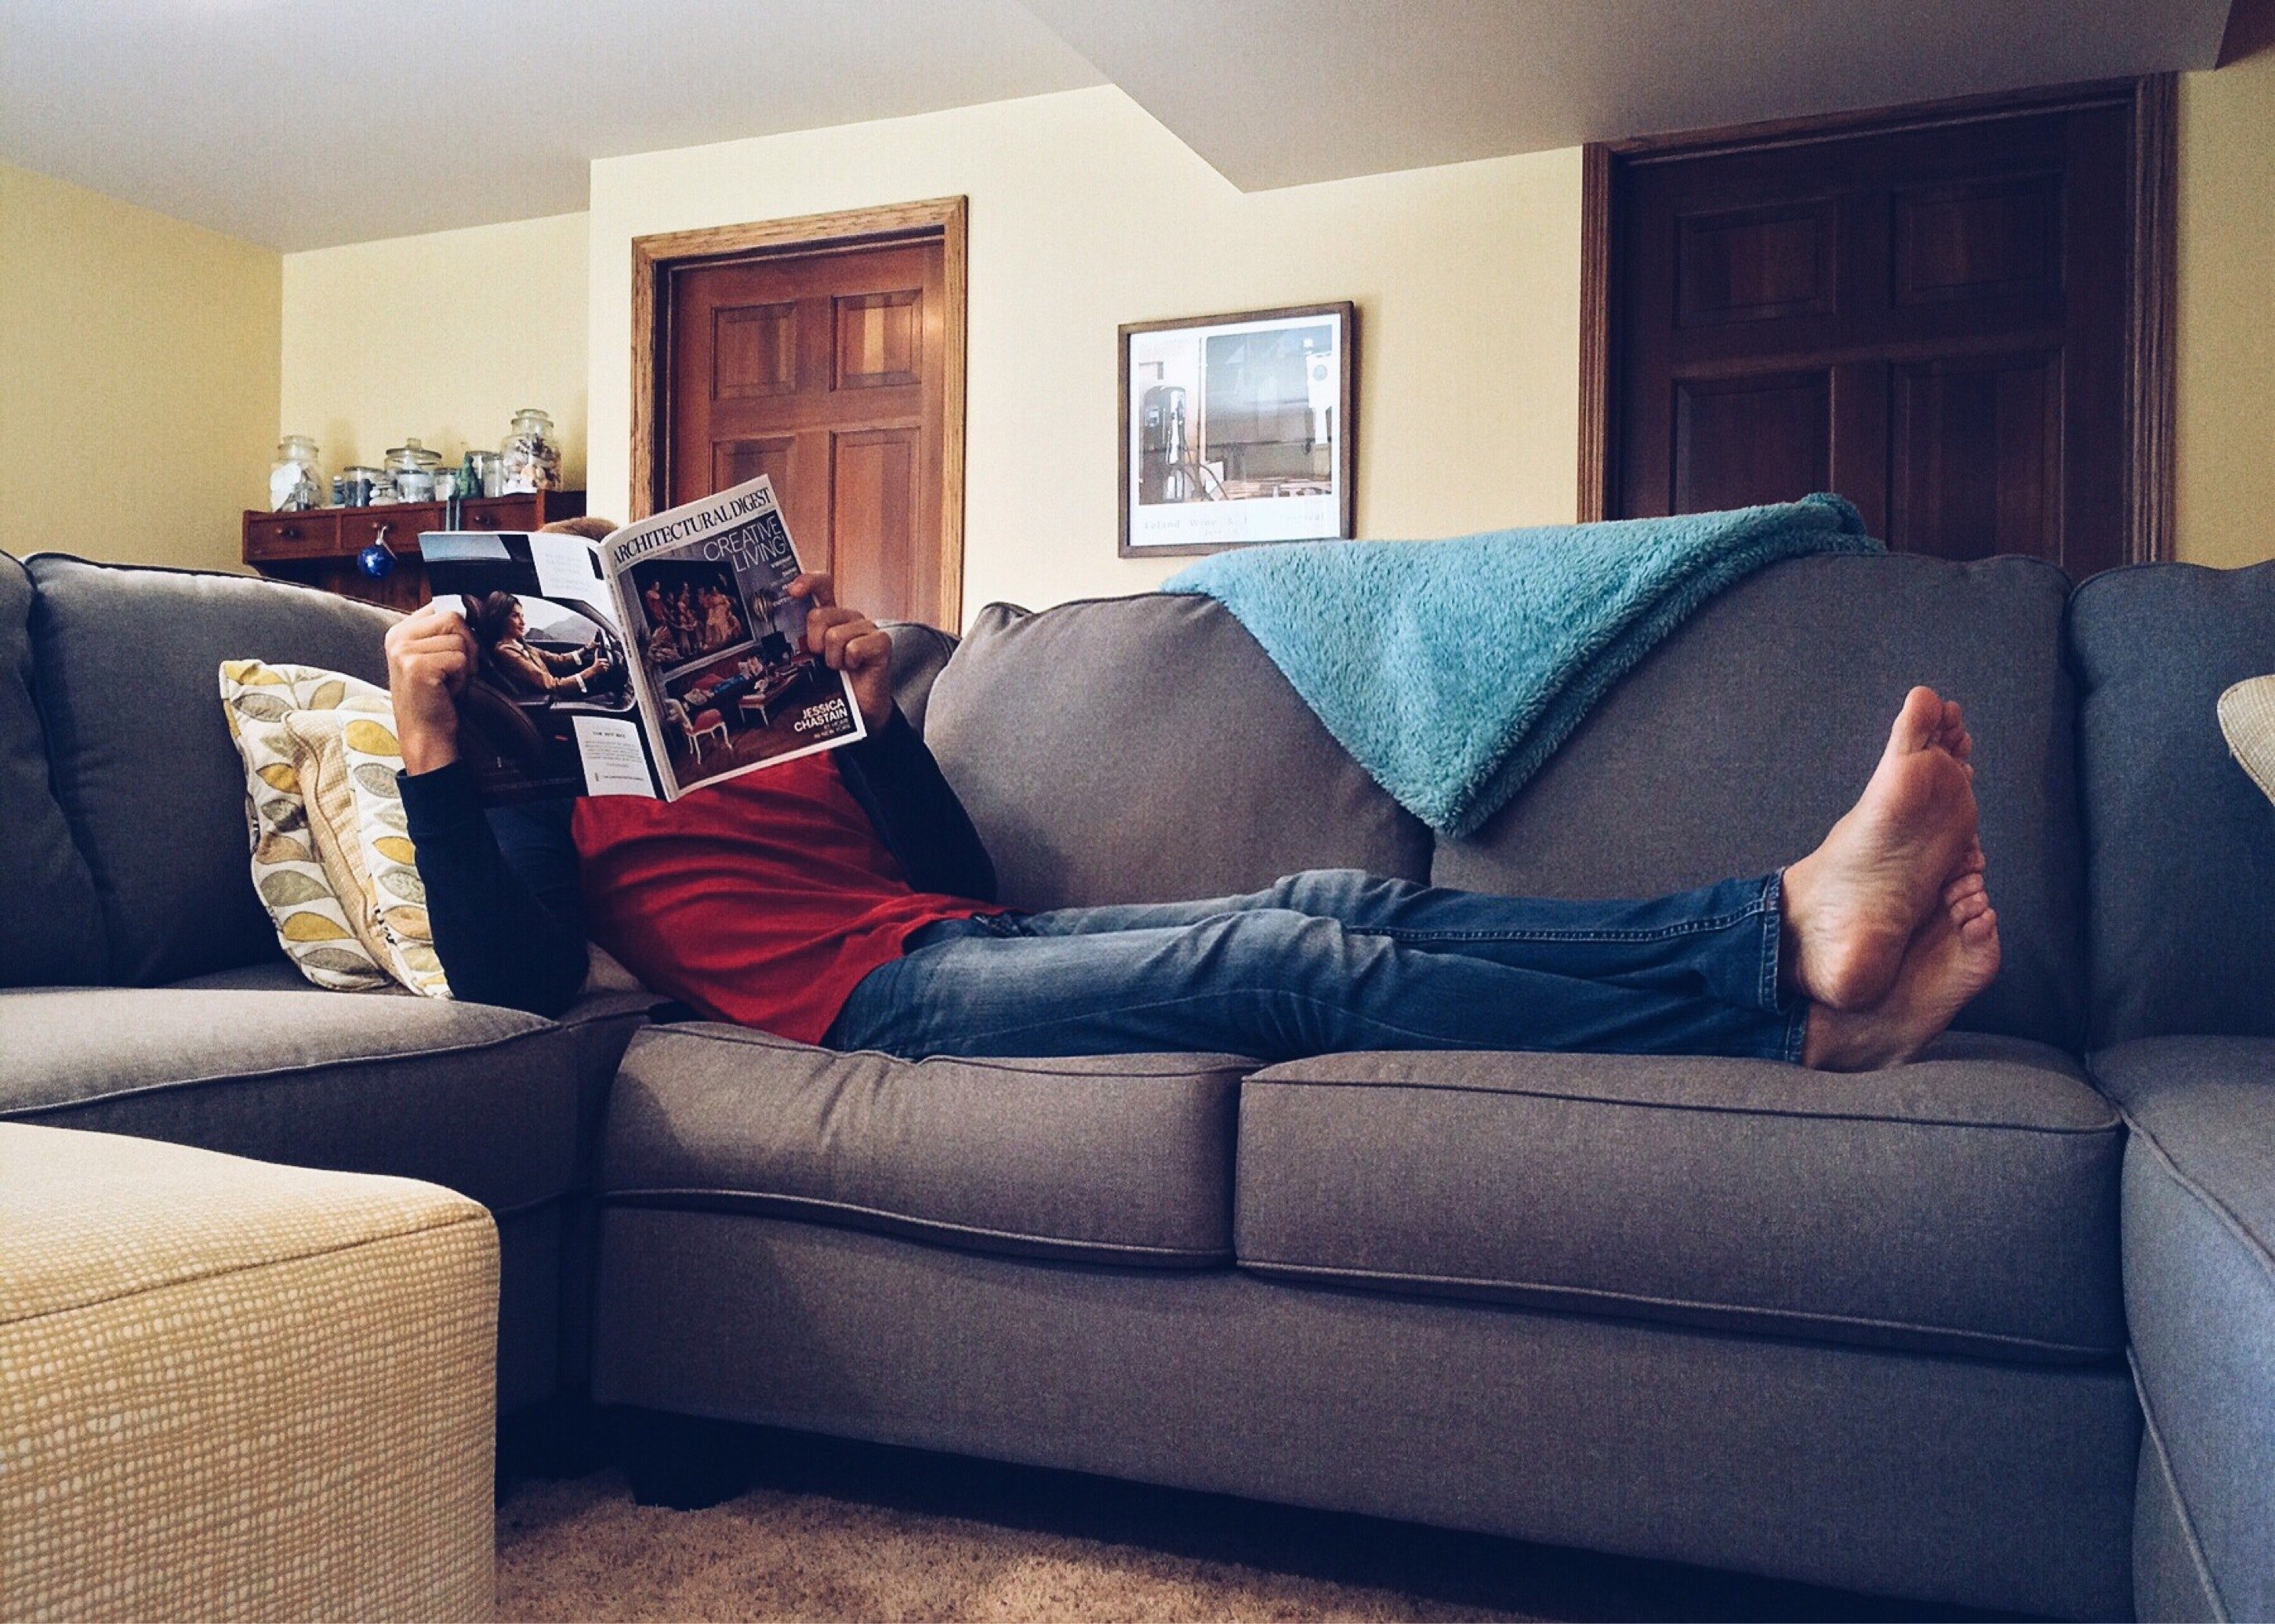 Zach se détendait sur le canapé toute la journée et ne prenait jamais la peine d'aider Lydia. | Source : Pexels